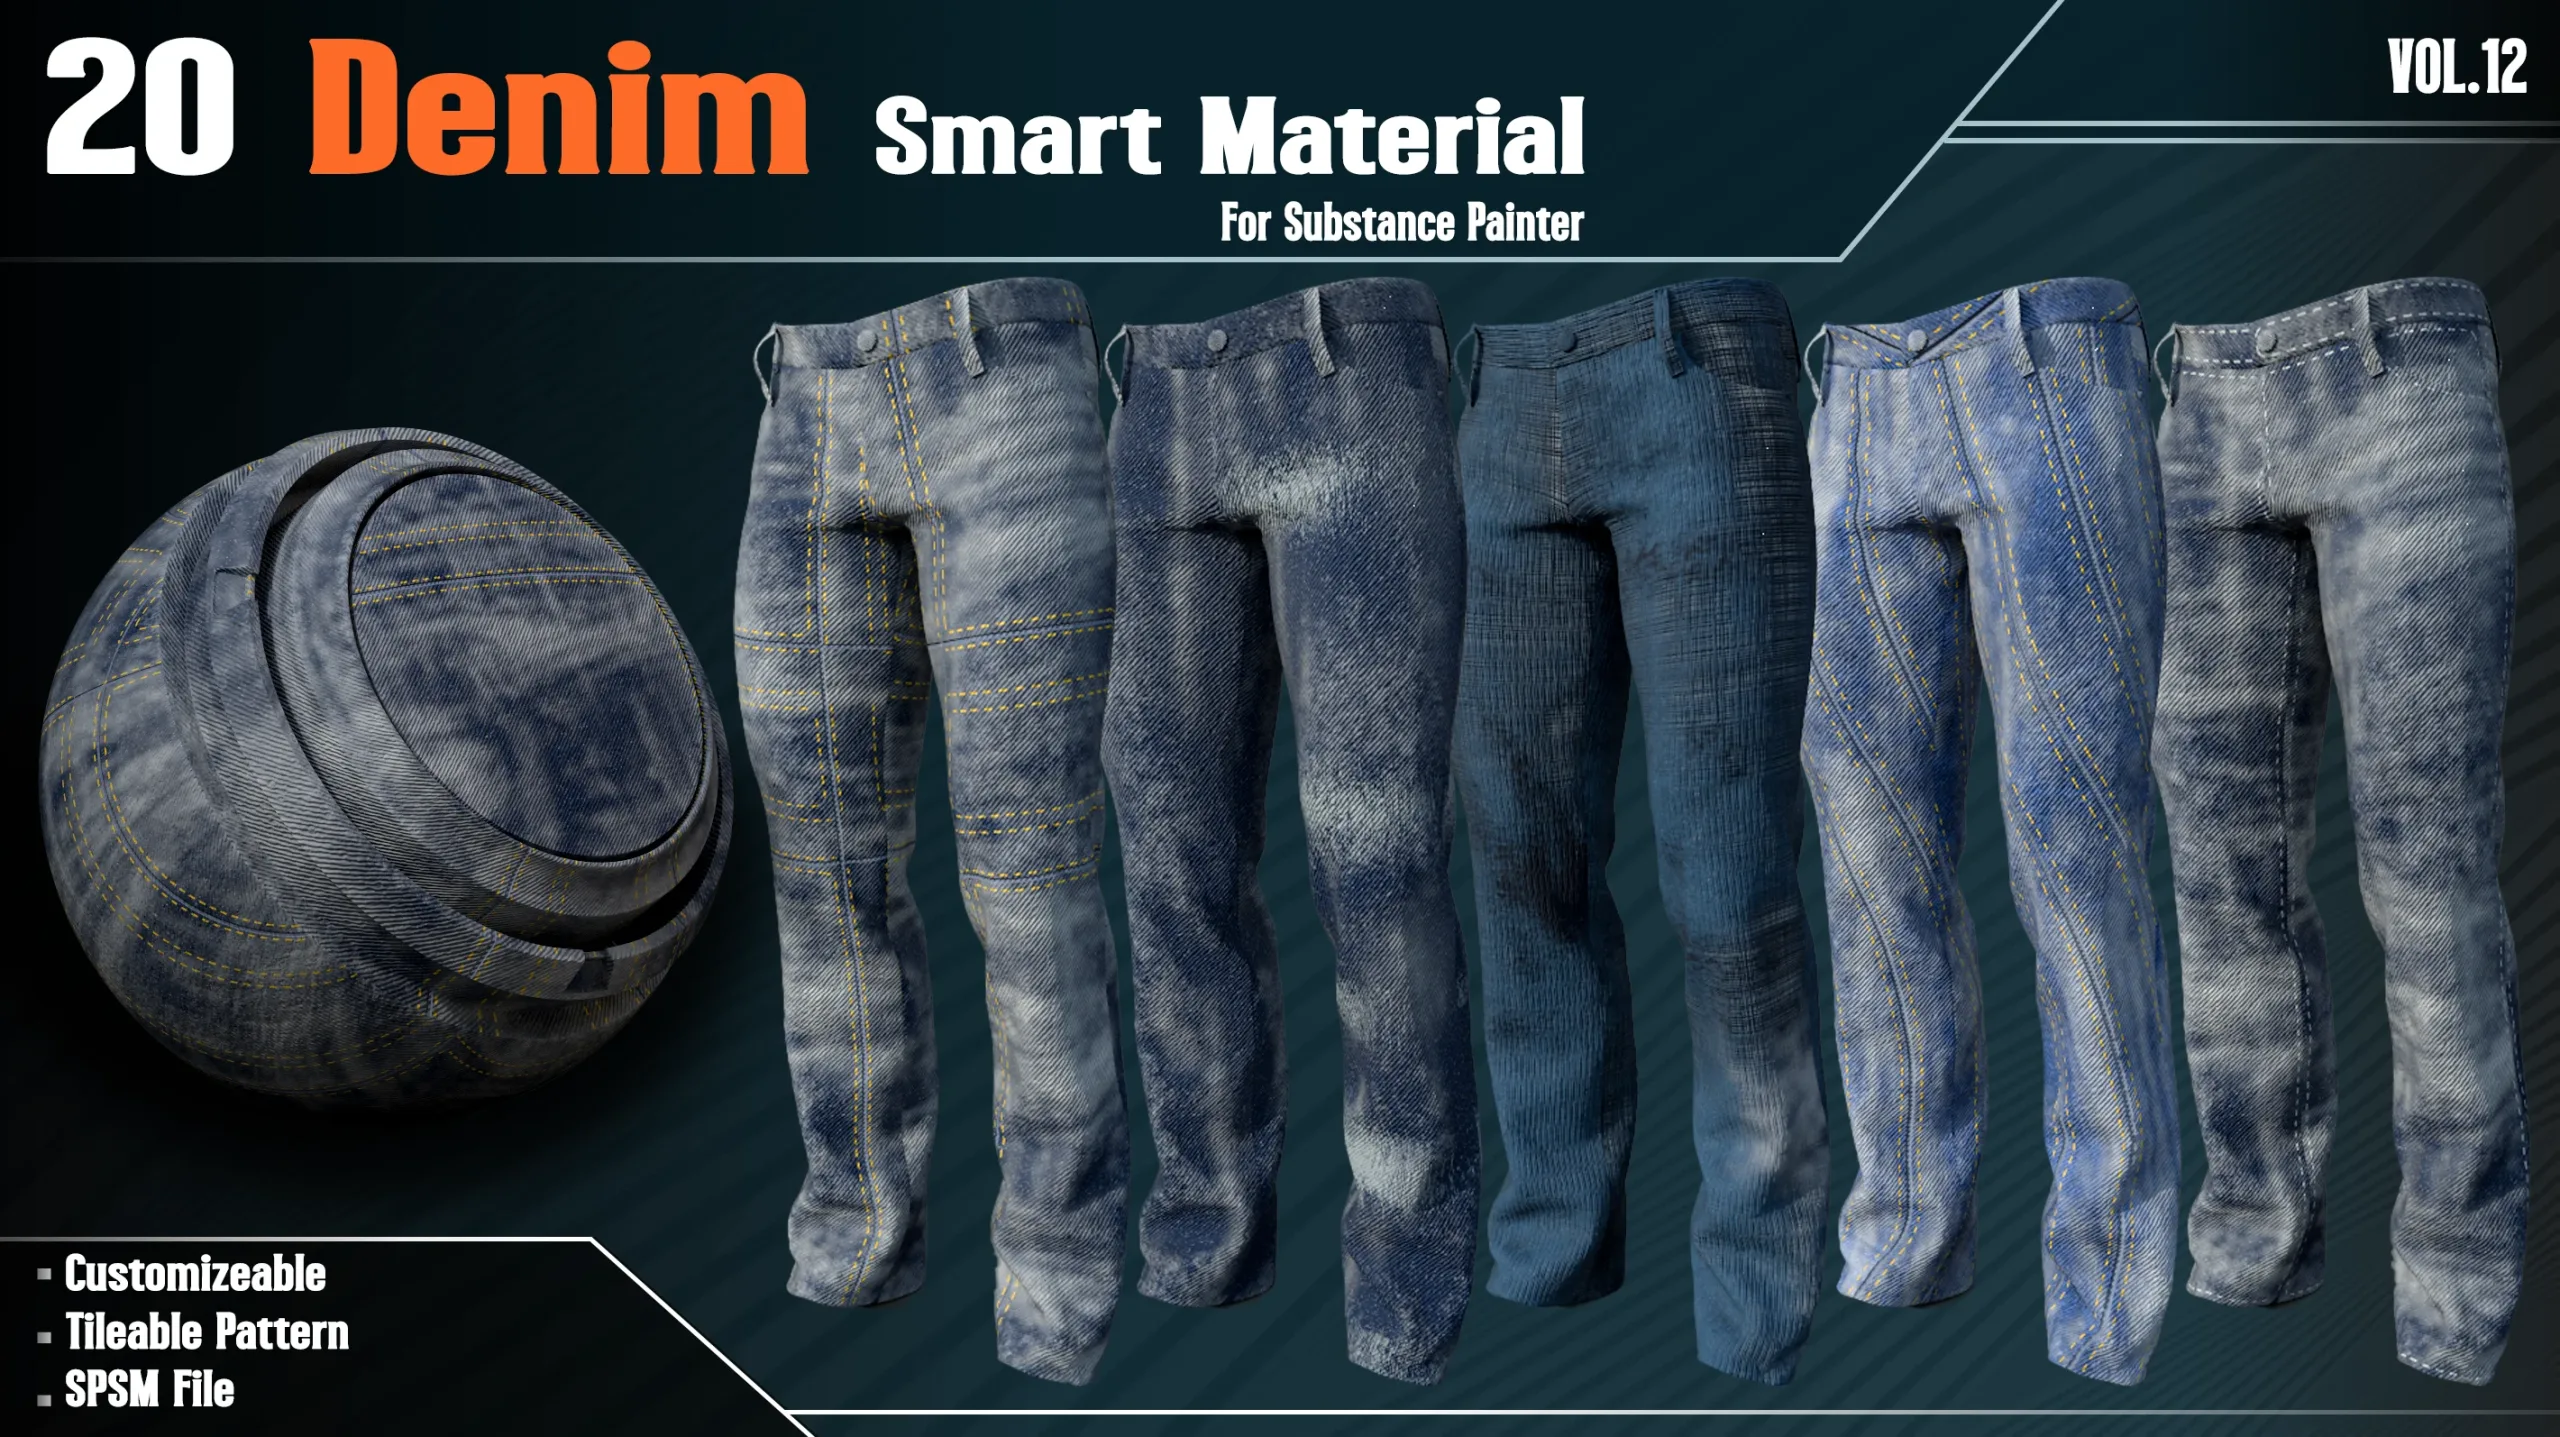 20 Denim Fabric Smart Material - VOL12 (spsm File + 2 FREE Sample)